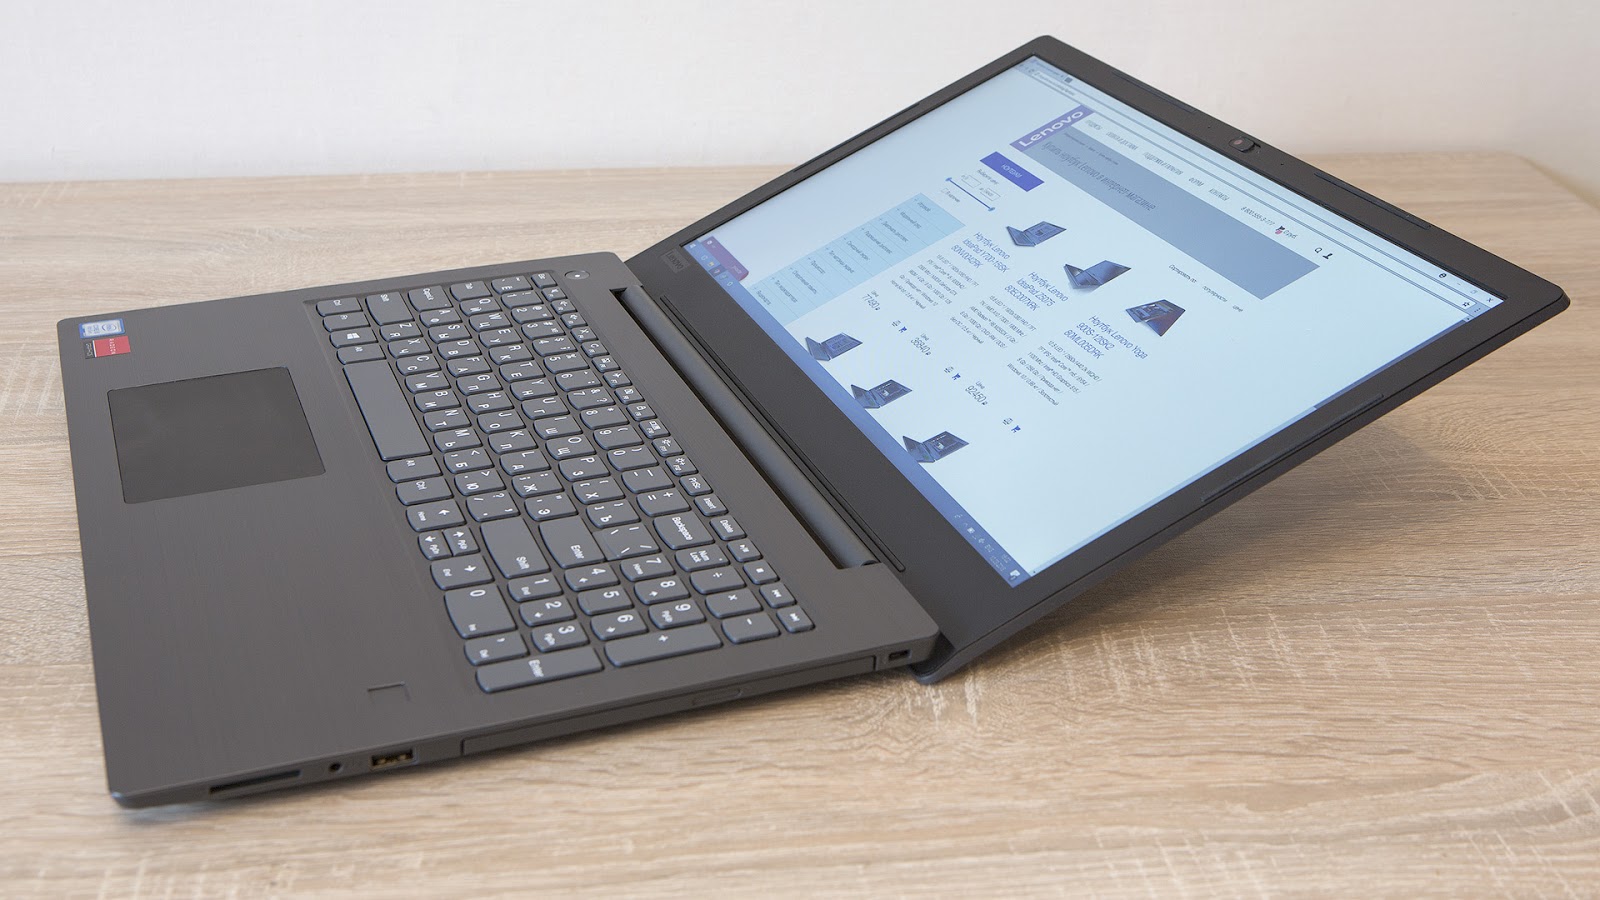 Обзор ноутбука Lenovo V330-15: надёжный офисный трудяга - 16